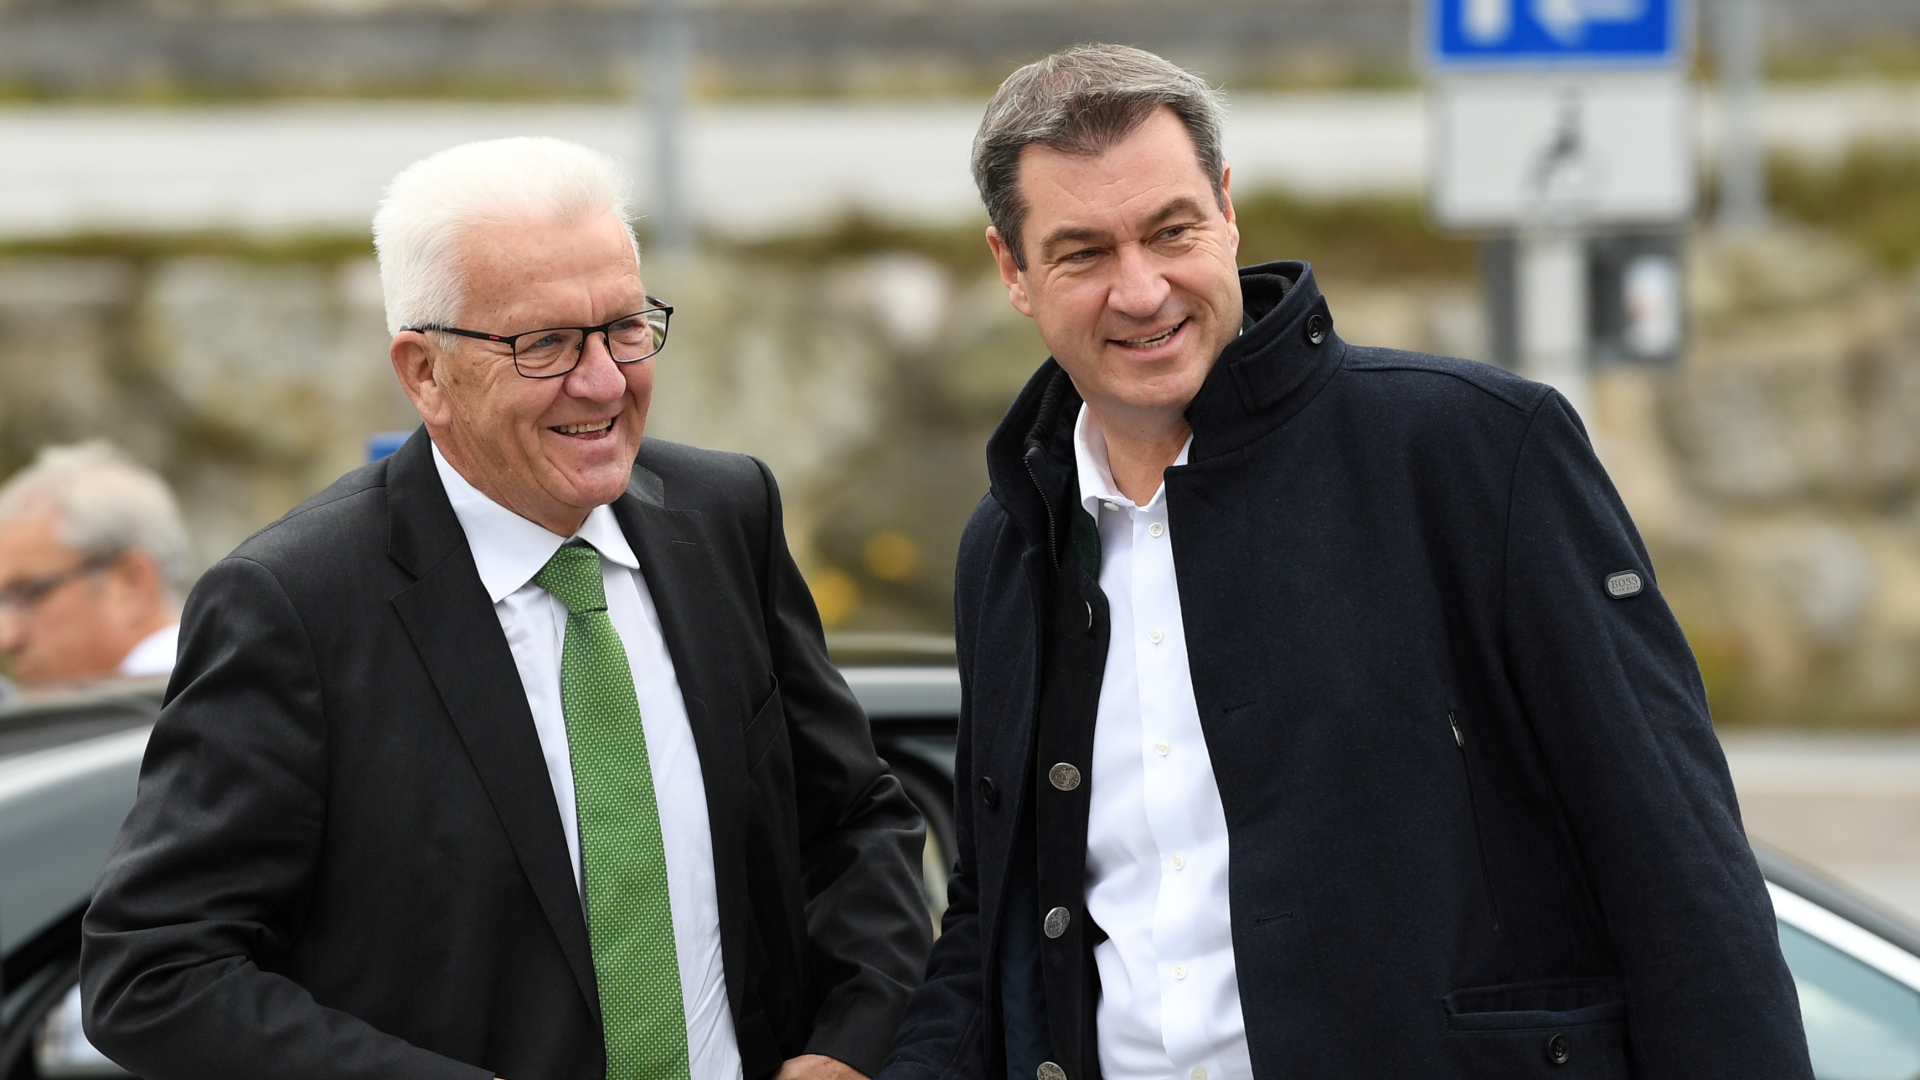 Baden-Württembergs Ministerpräsident Kretschmann wird von seinem bayerischen Amtskollegen Söder empfangen.